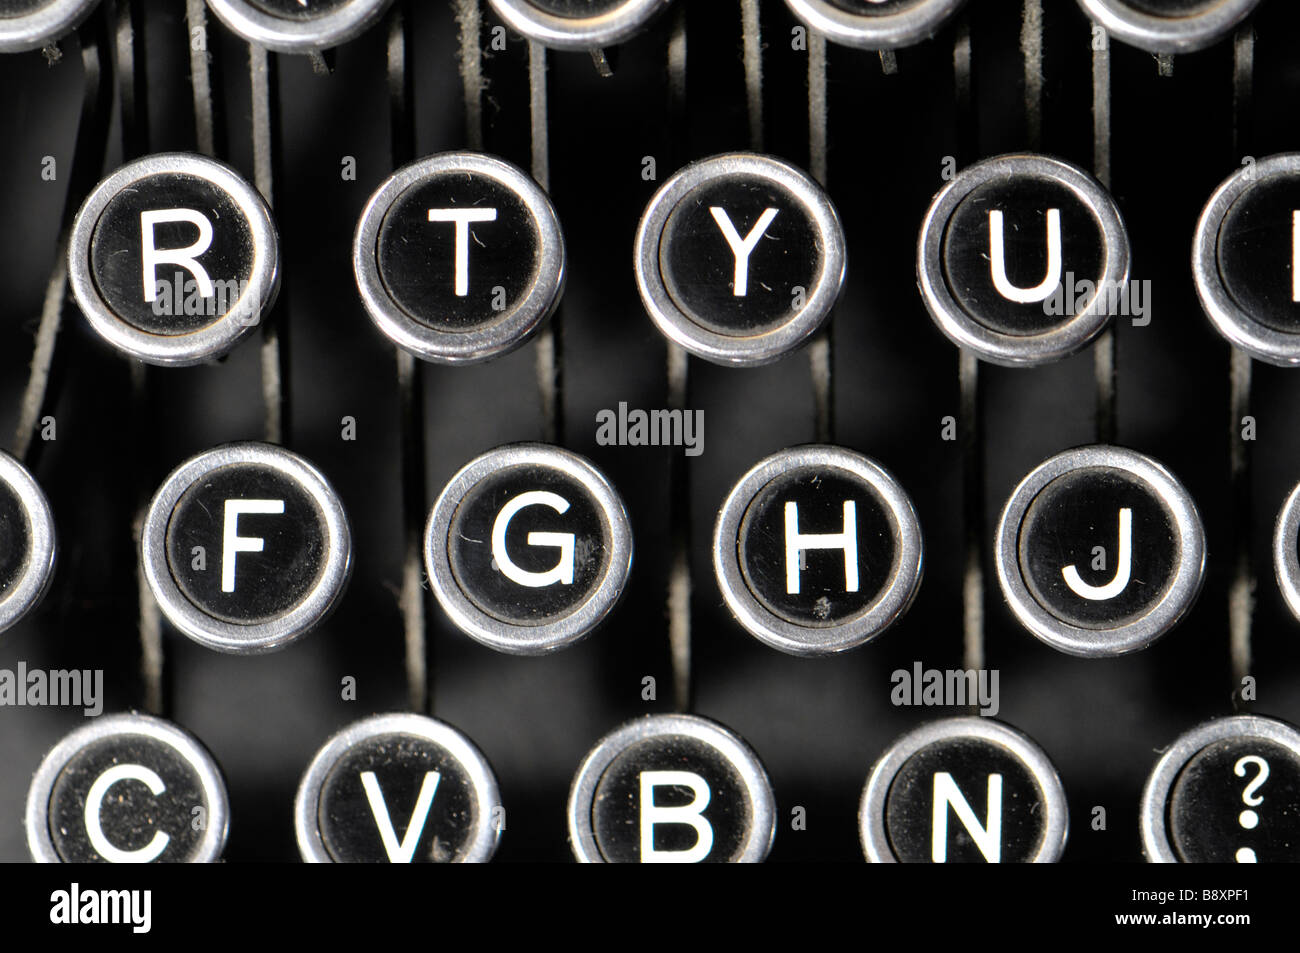 Keyboard of an old typewriter Stock Photo